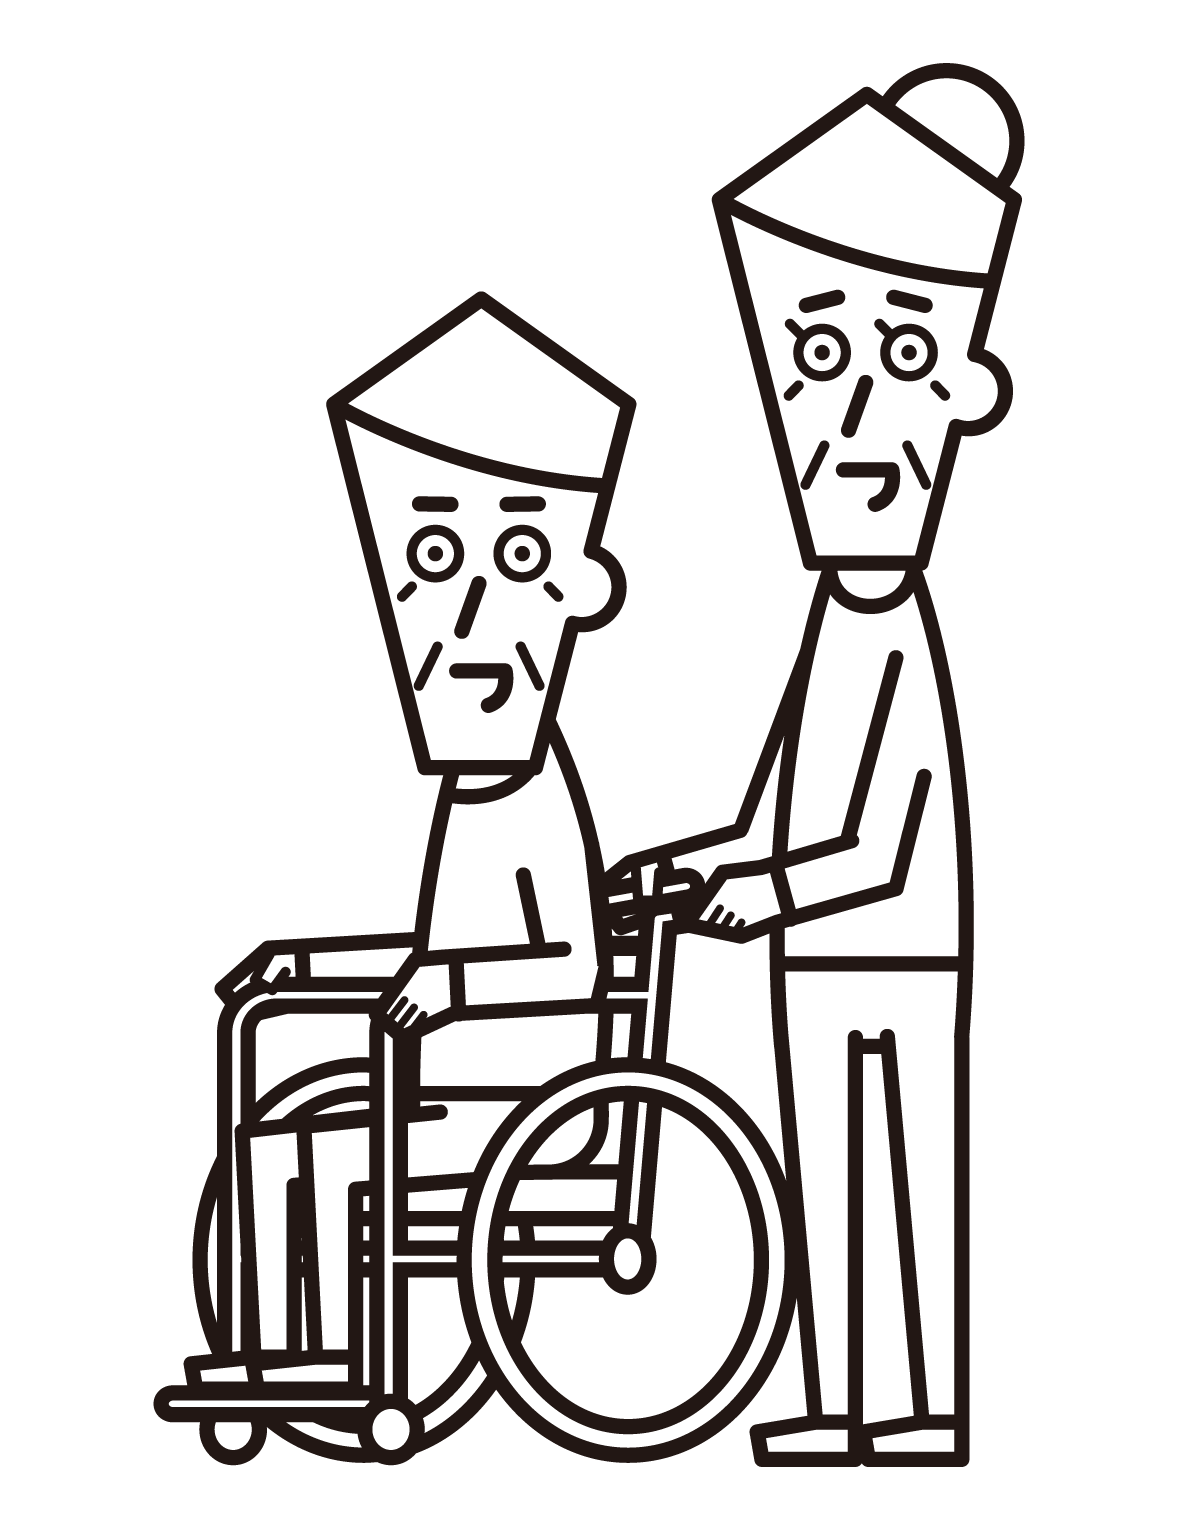 휠체어를 탄 사람(할아버지)과 푸셔(할머니)의 그림